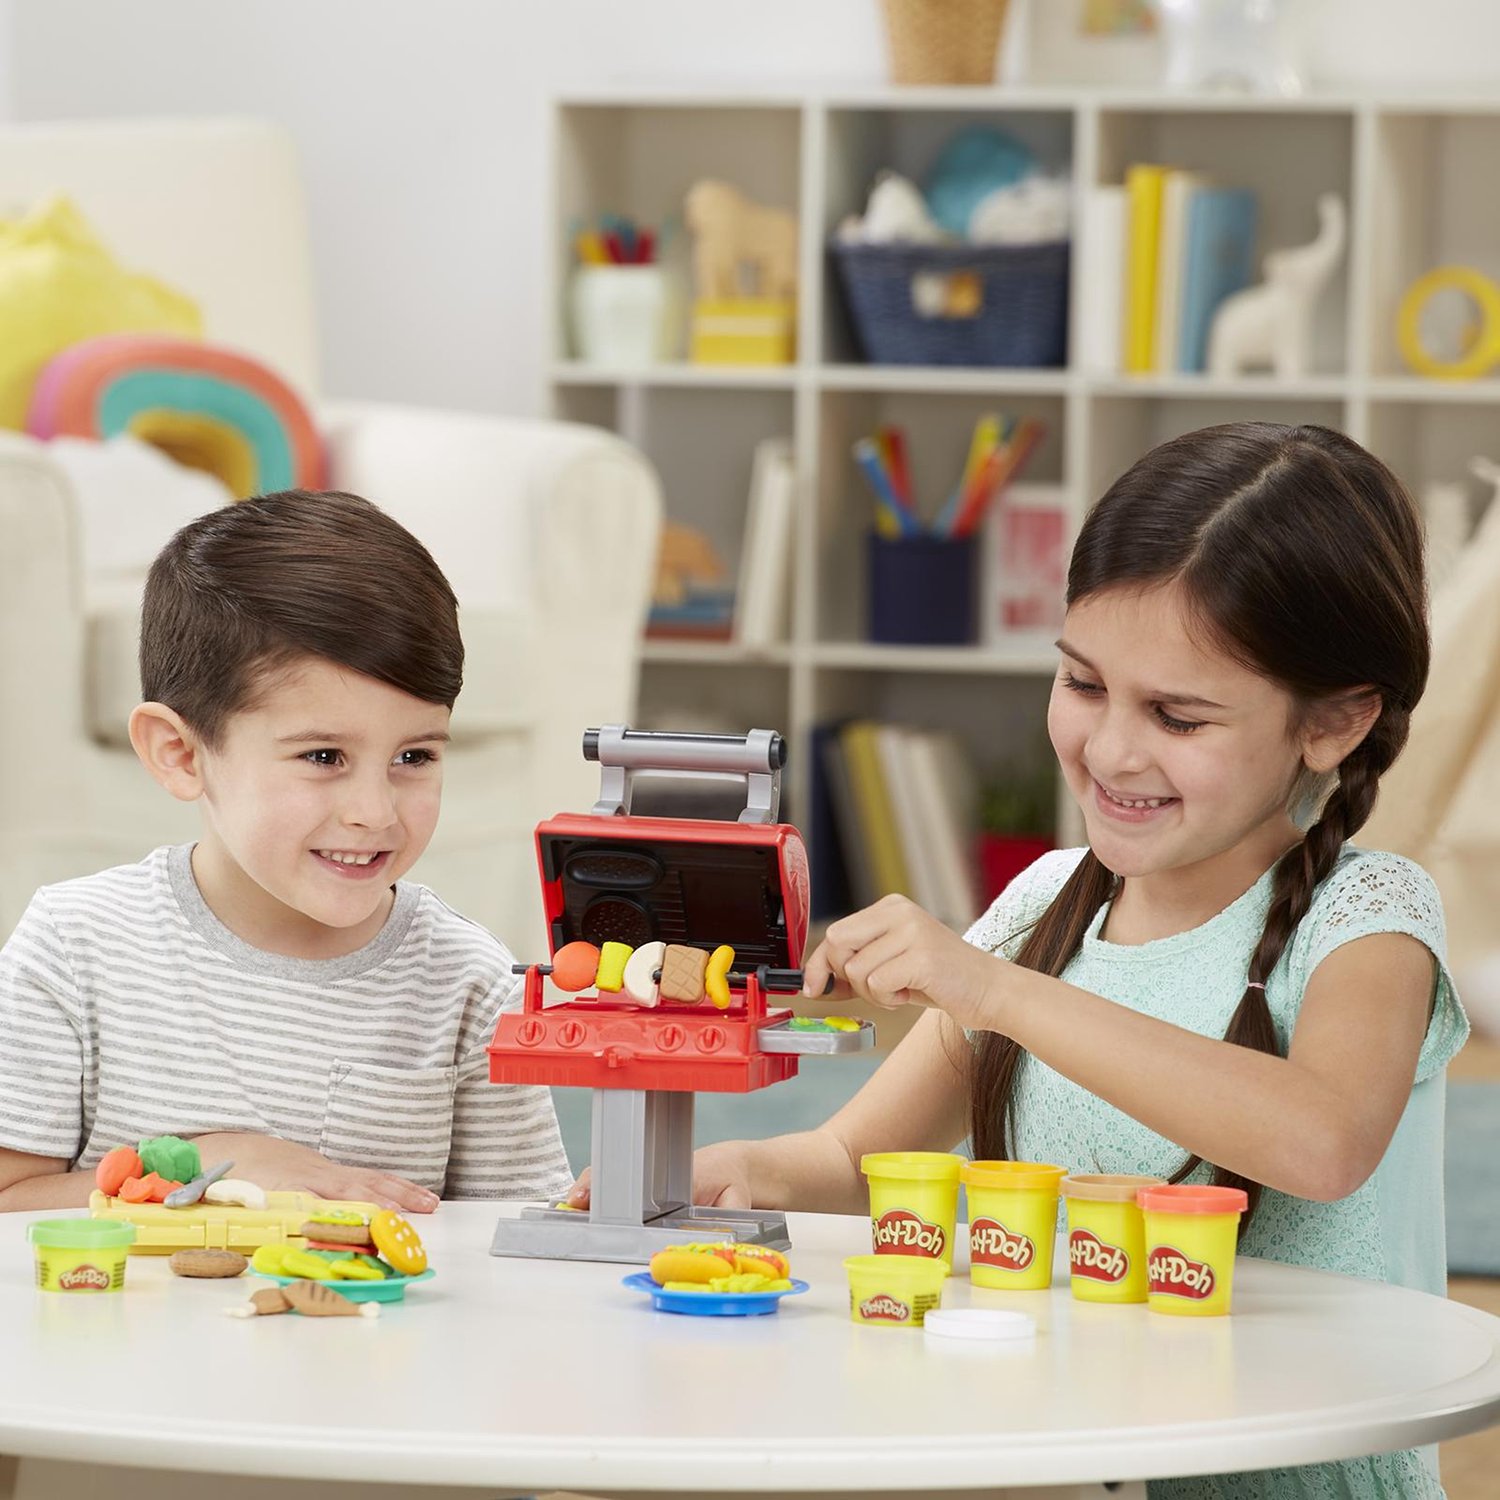 Набор игровой Play-Doh Гриль барбекю F06525L0